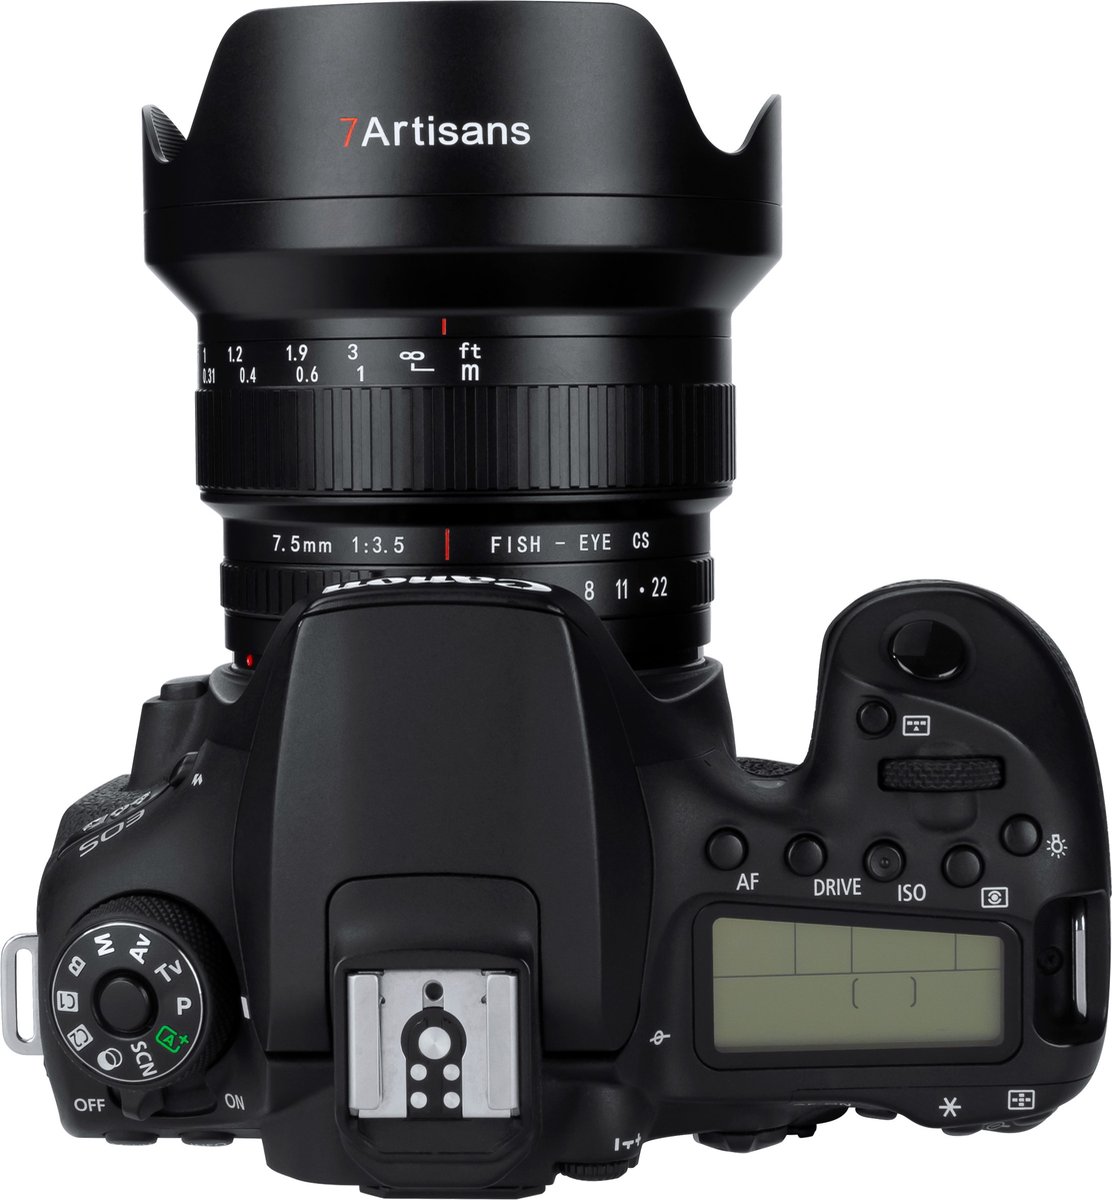 7artisans - Cameralens - 7.5mm F3.5 Canon EF-vatting, zwart